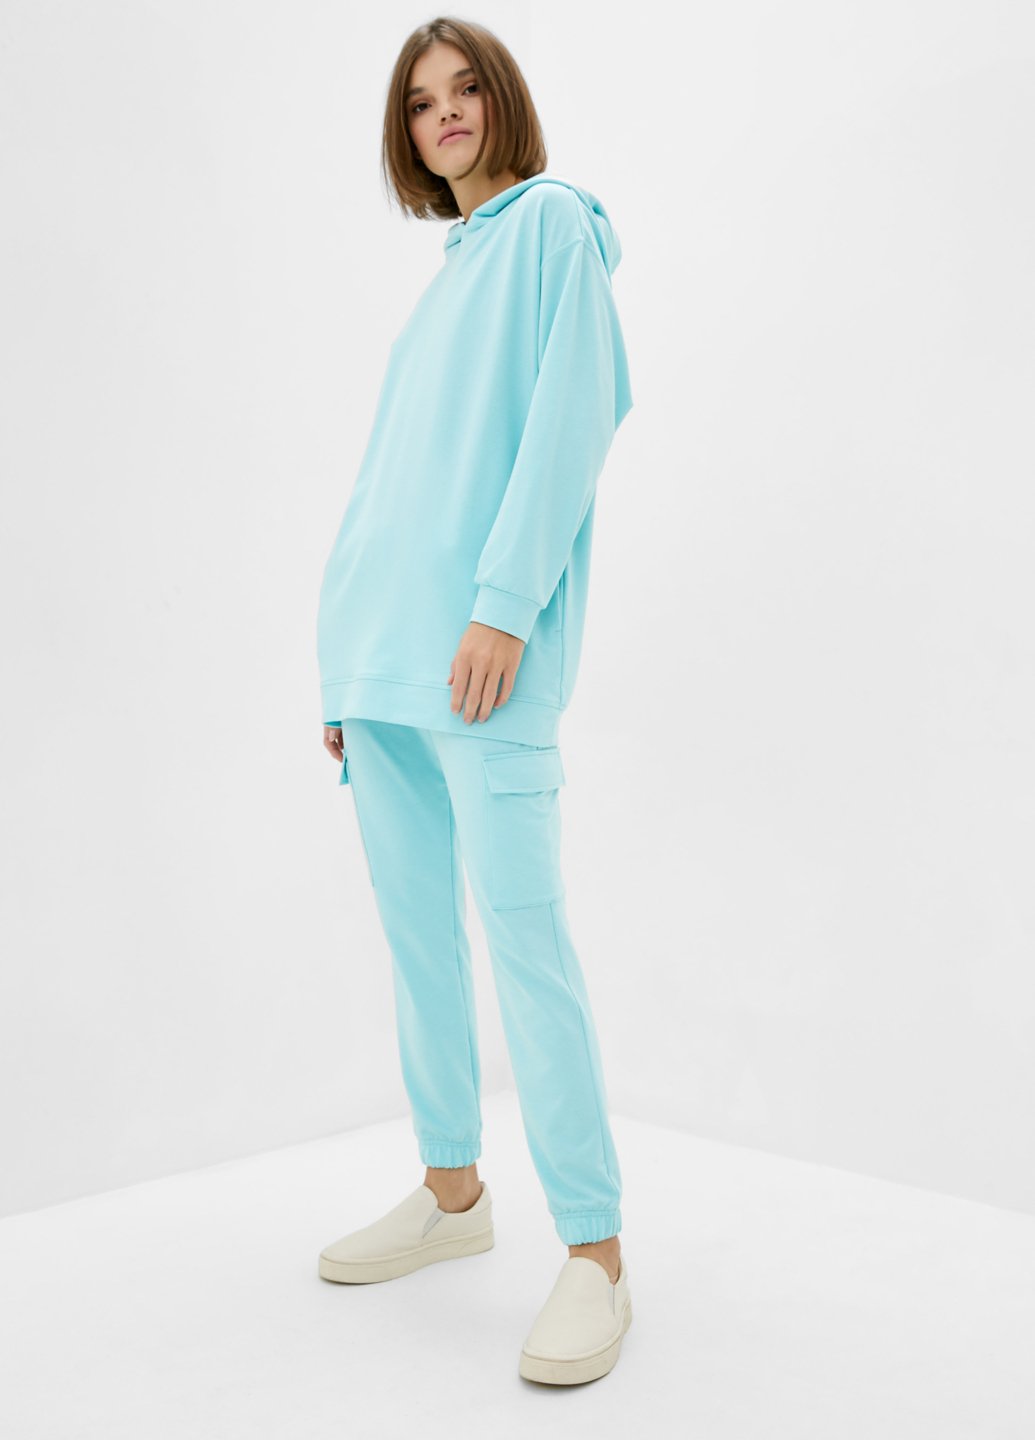 Купить Спортивный костюм женский голубого цвета Merlini Челси 100000062, размер 42-44 в интернет-магазине